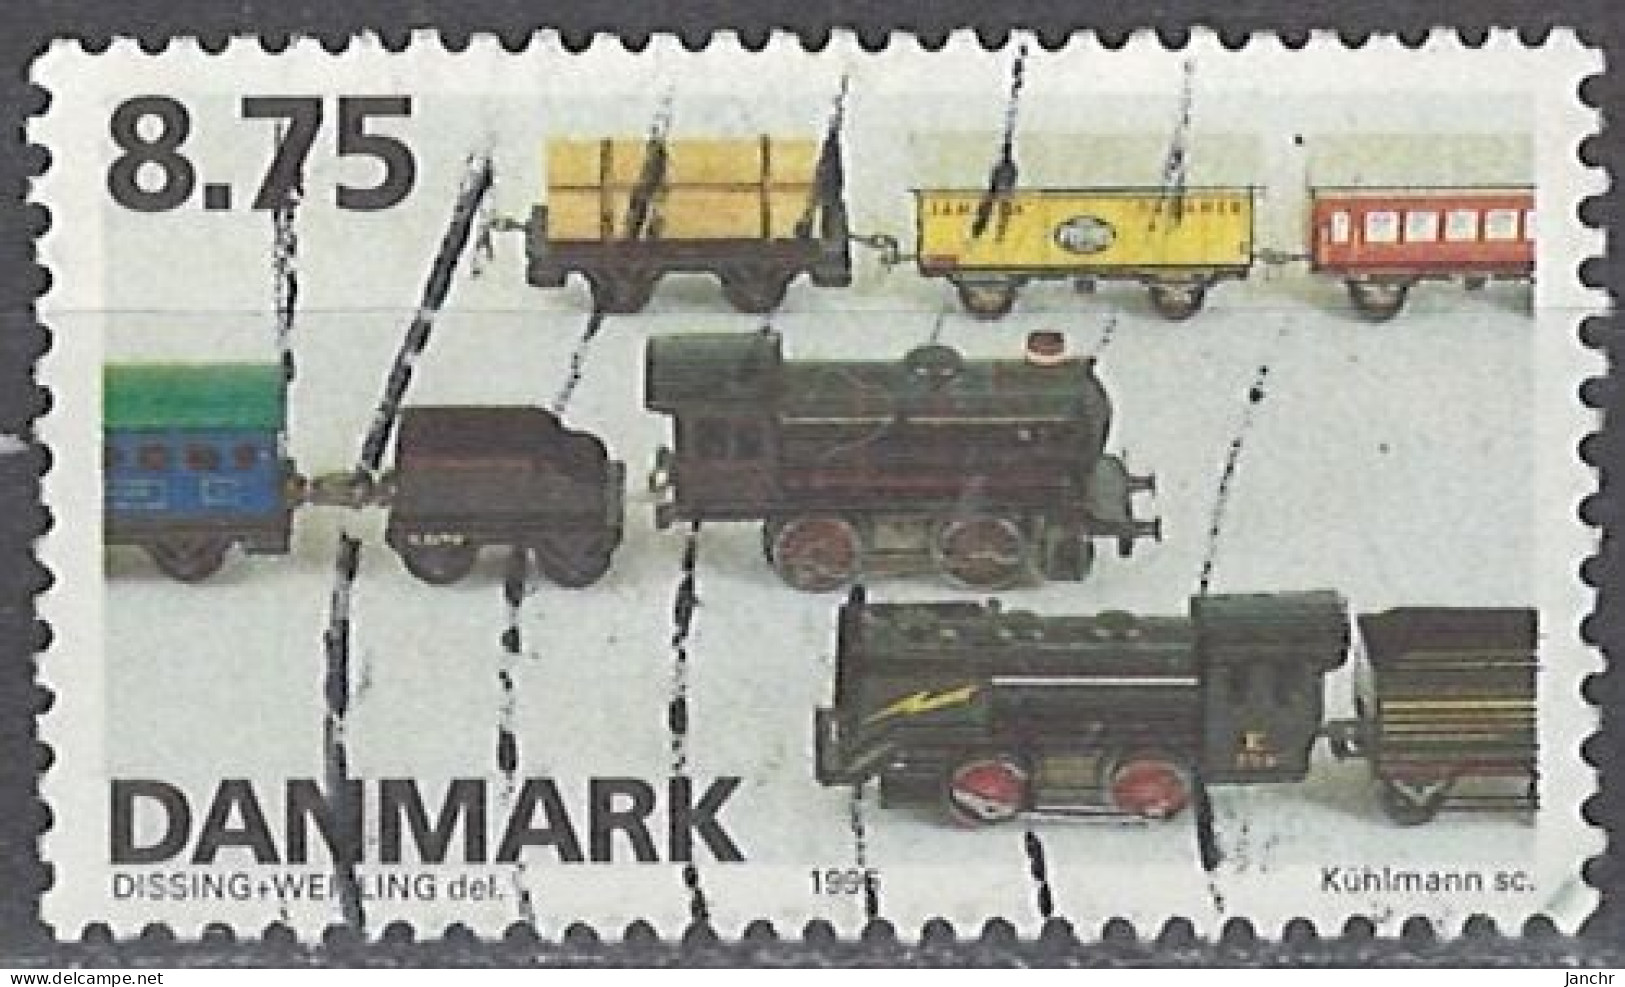 Denmark 1995. Mi.Nr. 1114, Used O - Usado